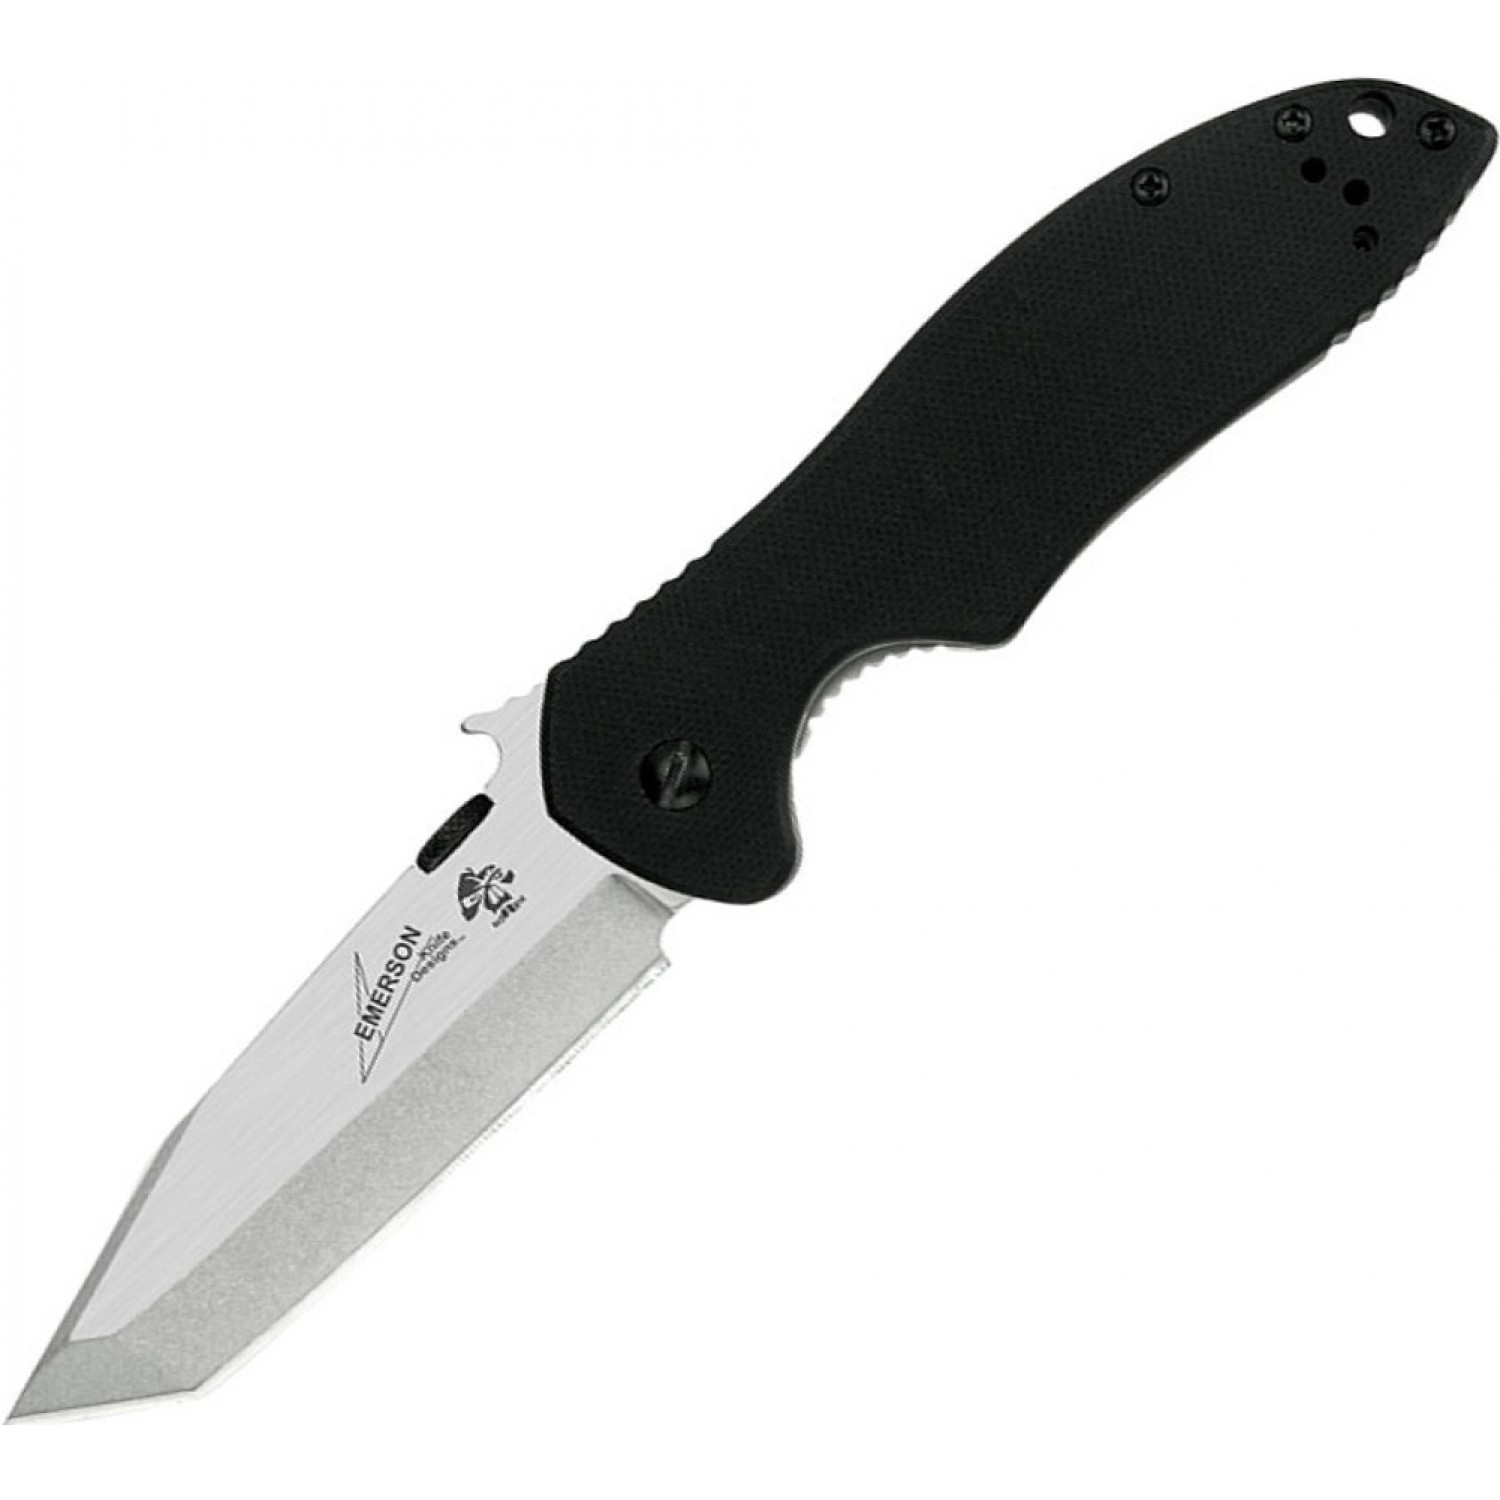 Нож Kershaw Emerson складной 6034T CQC-7K cталь 8Cr14Mov - фото 1